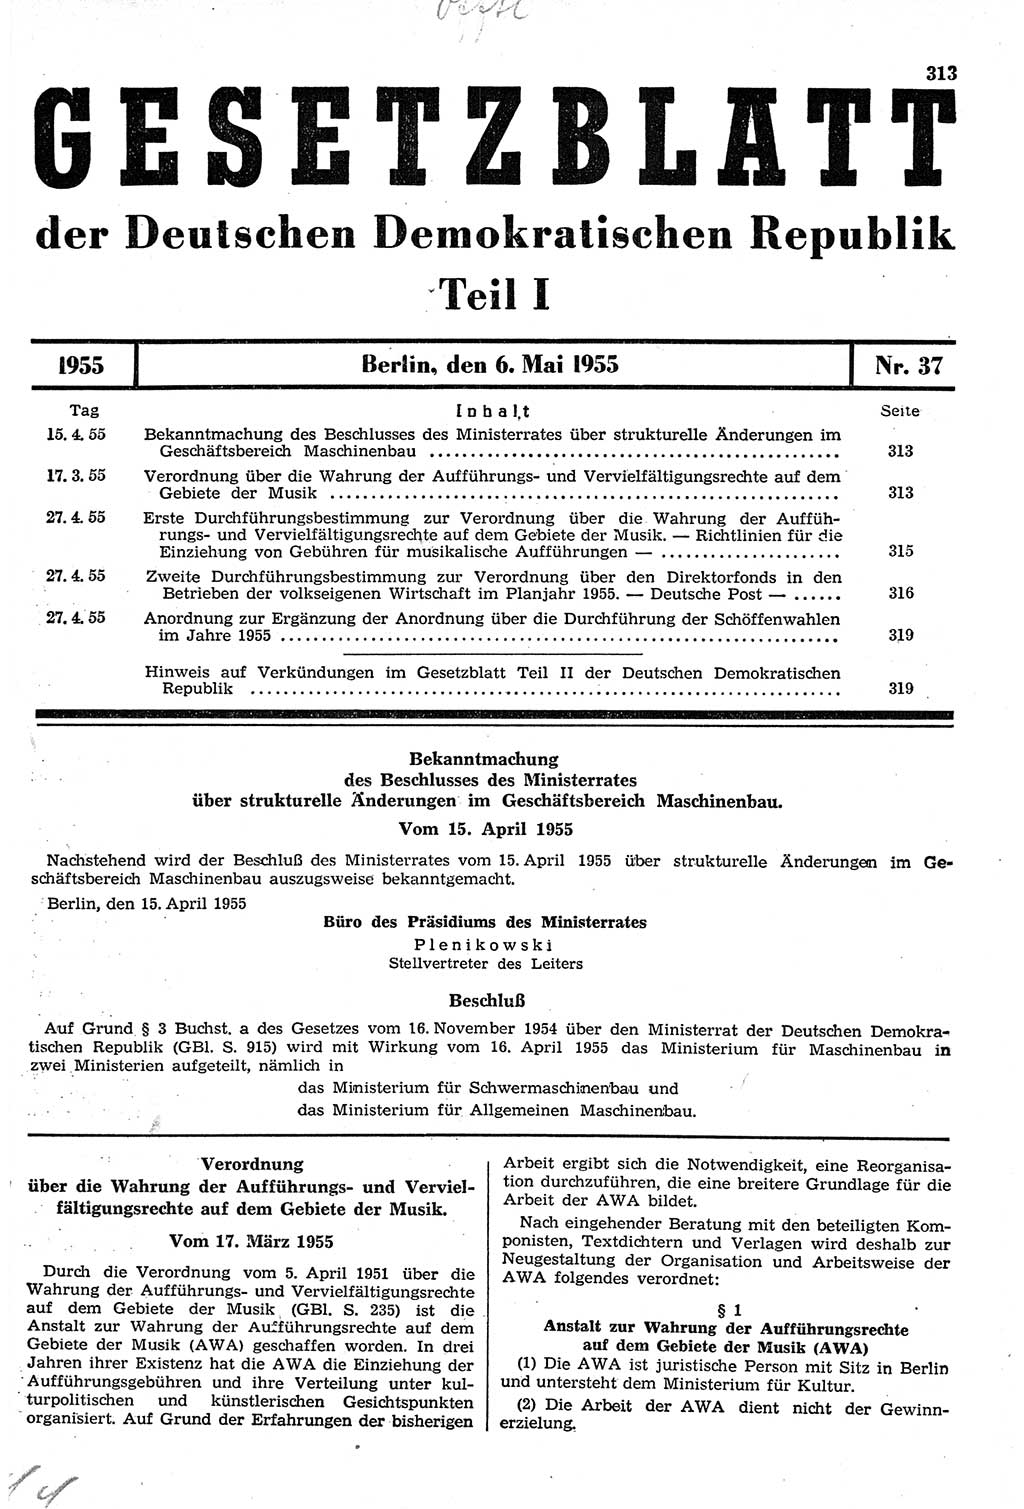 Gesetzblatt (GBl.) der Deutschen Demokratischen Republik (DDR) Teil Ⅰ 1955, Seite 313 (GBl. DDR Ⅰ 1955, S. 313)